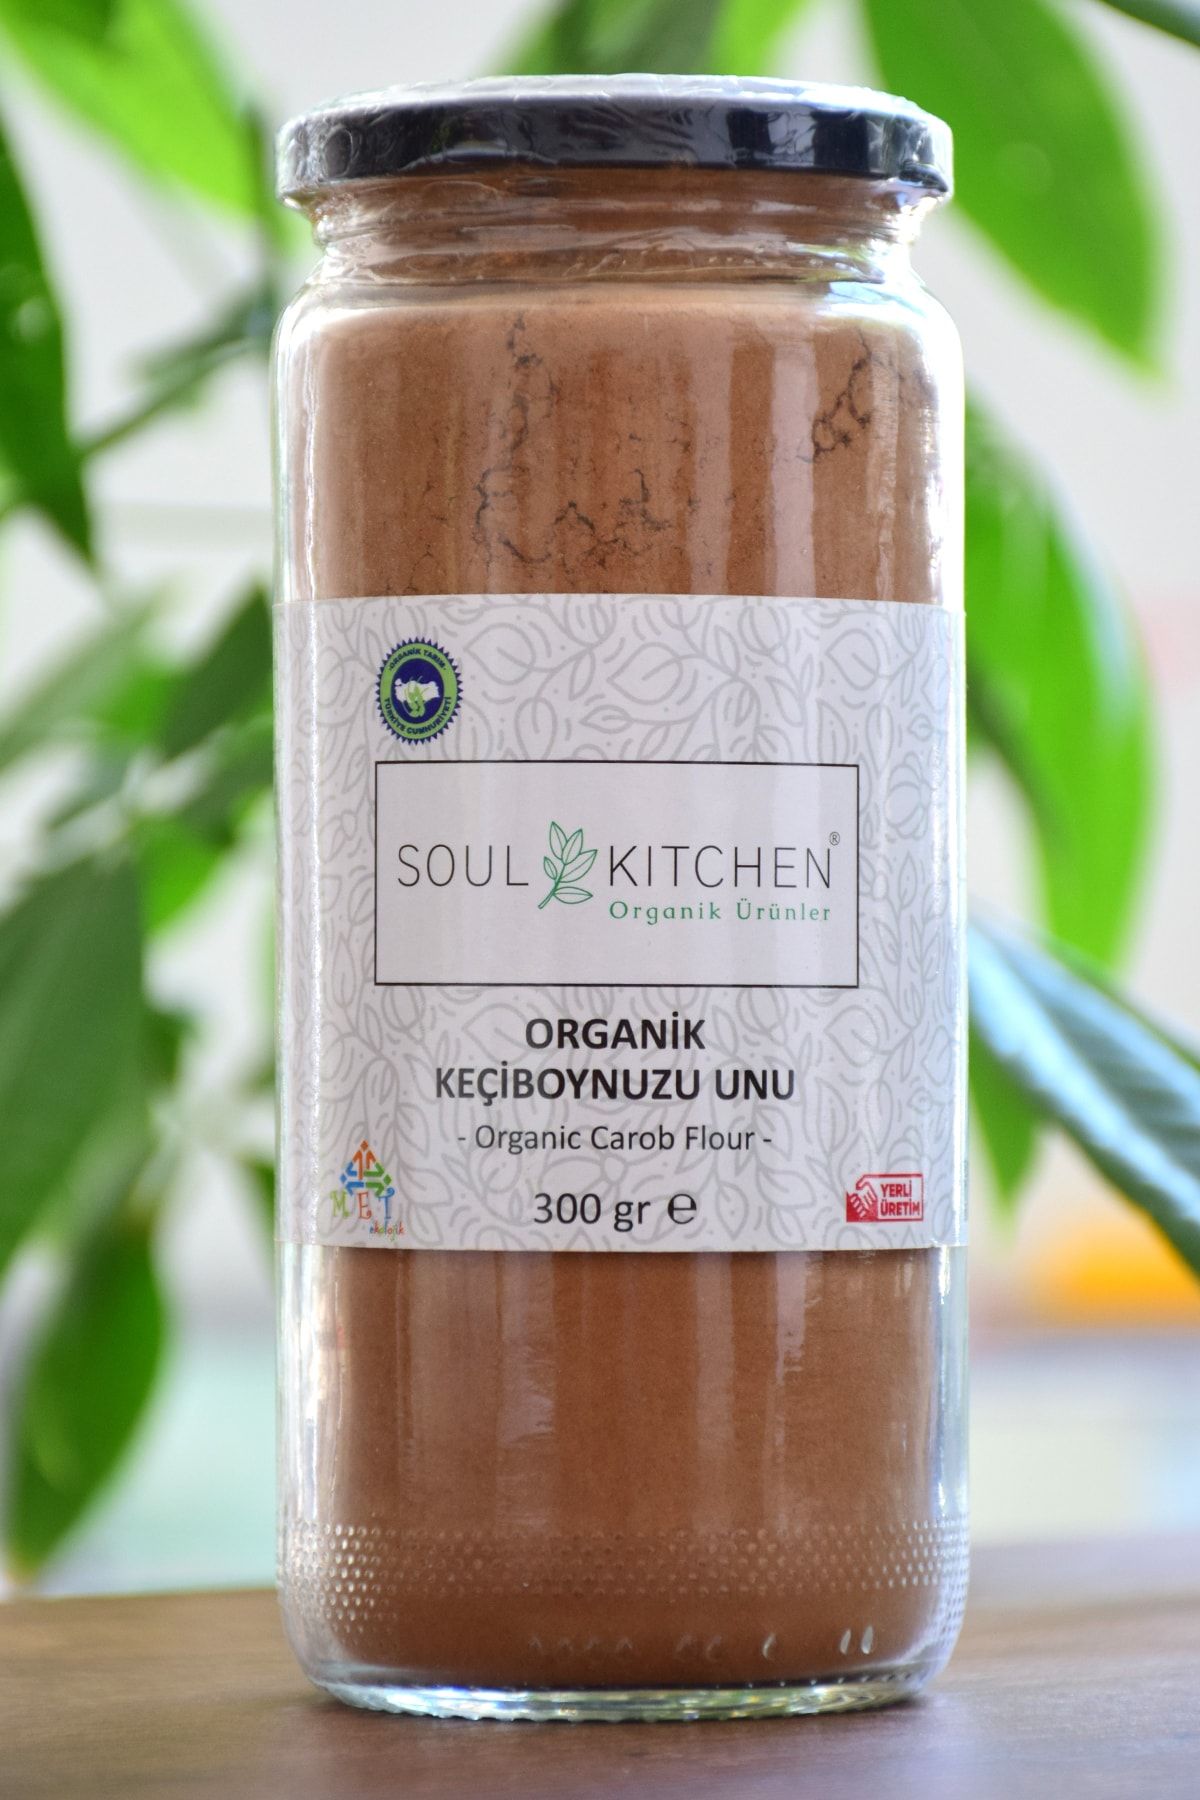 Soul Kitchen Organik Ürünler Organik Keçiboynuzu Unu 300gr